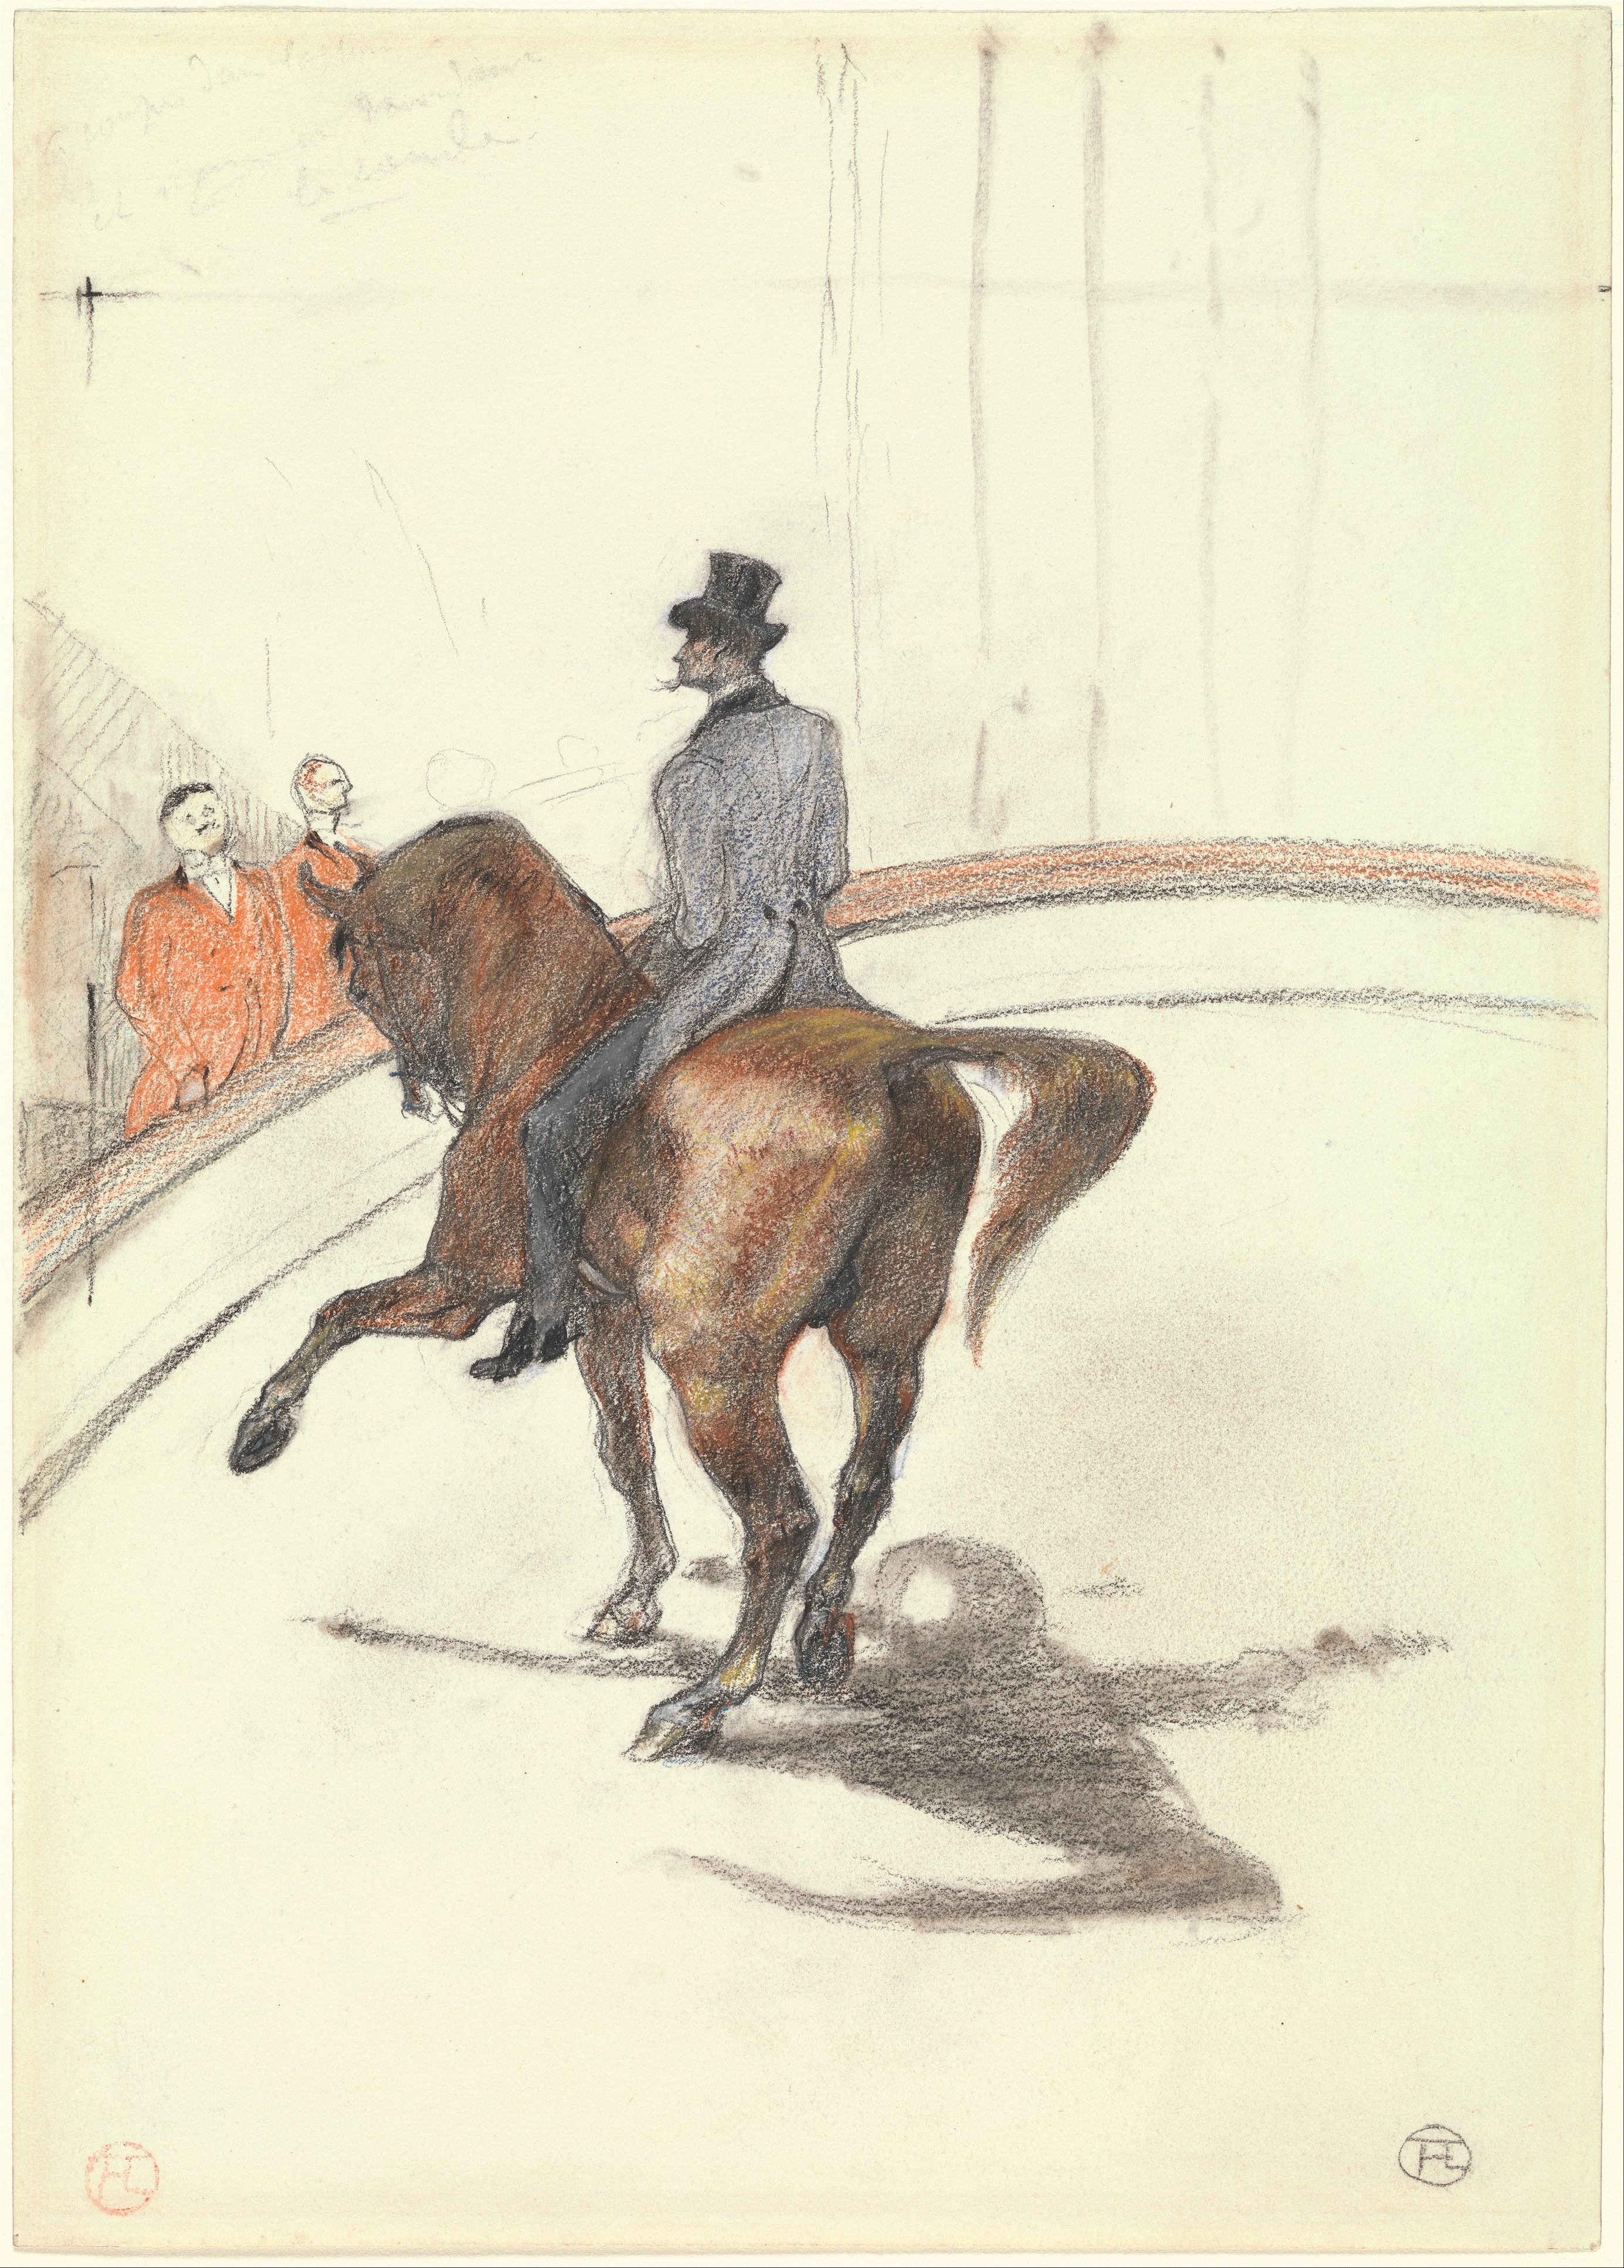 Στο τσίρκο: Ο ισπανικός περίπατος  by Ανρ Ντε Τουλούζ-Λωτρέκ - 1899 - 35 x 25 cm 